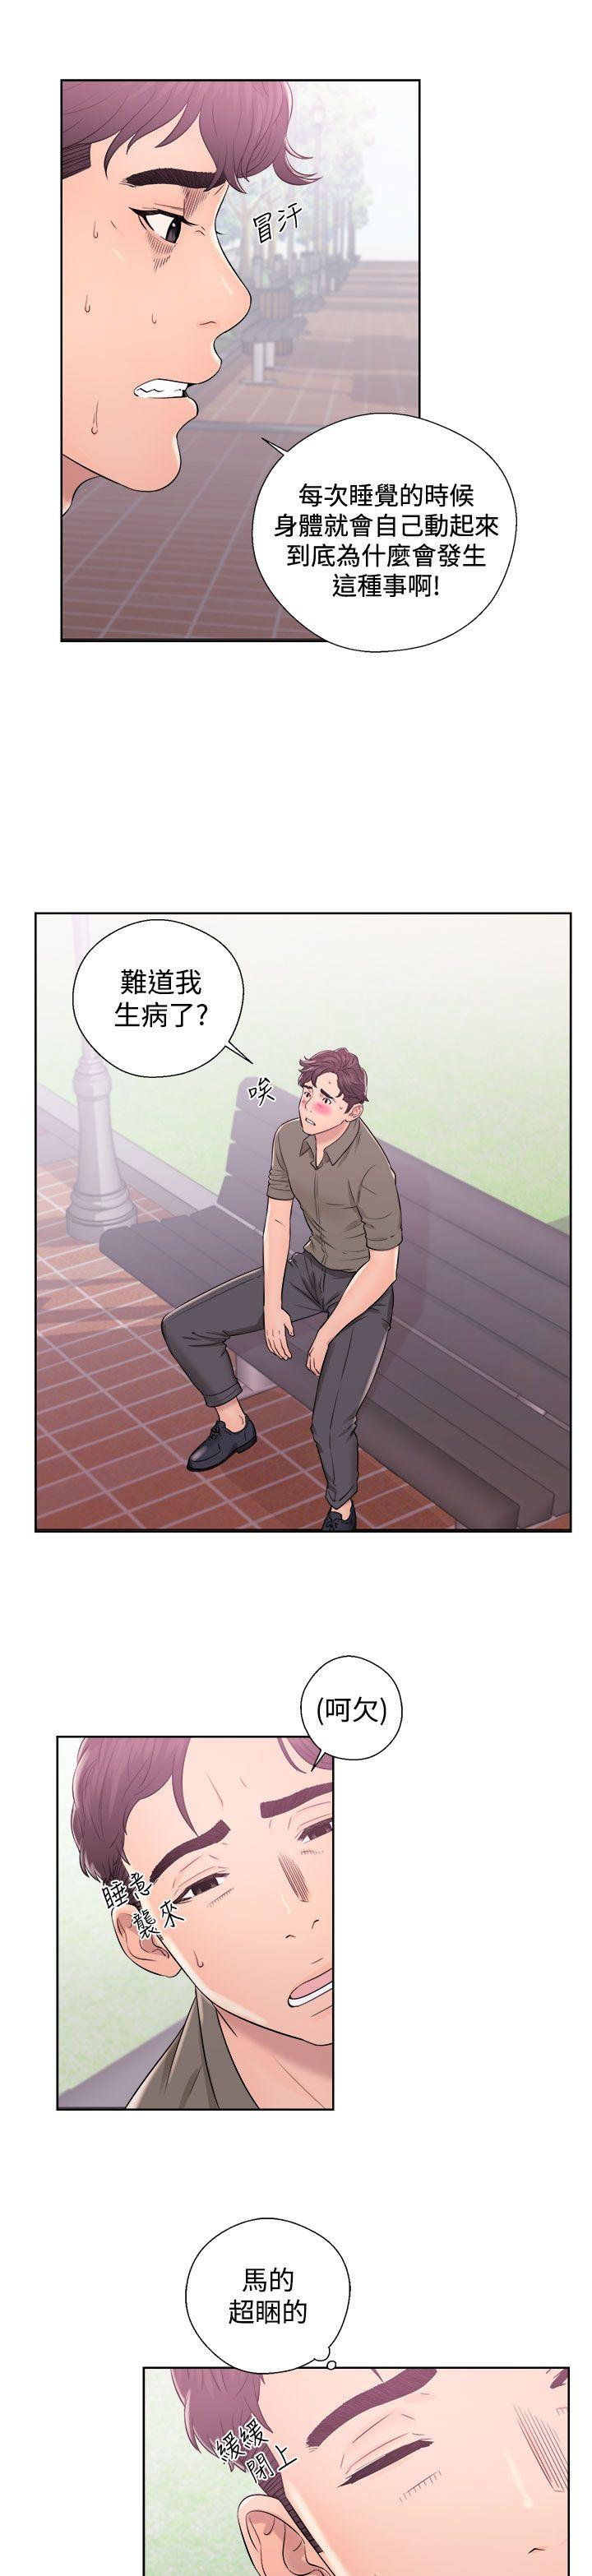 韩国污漫画 青春:逆齡小鮮肉 第8话 13